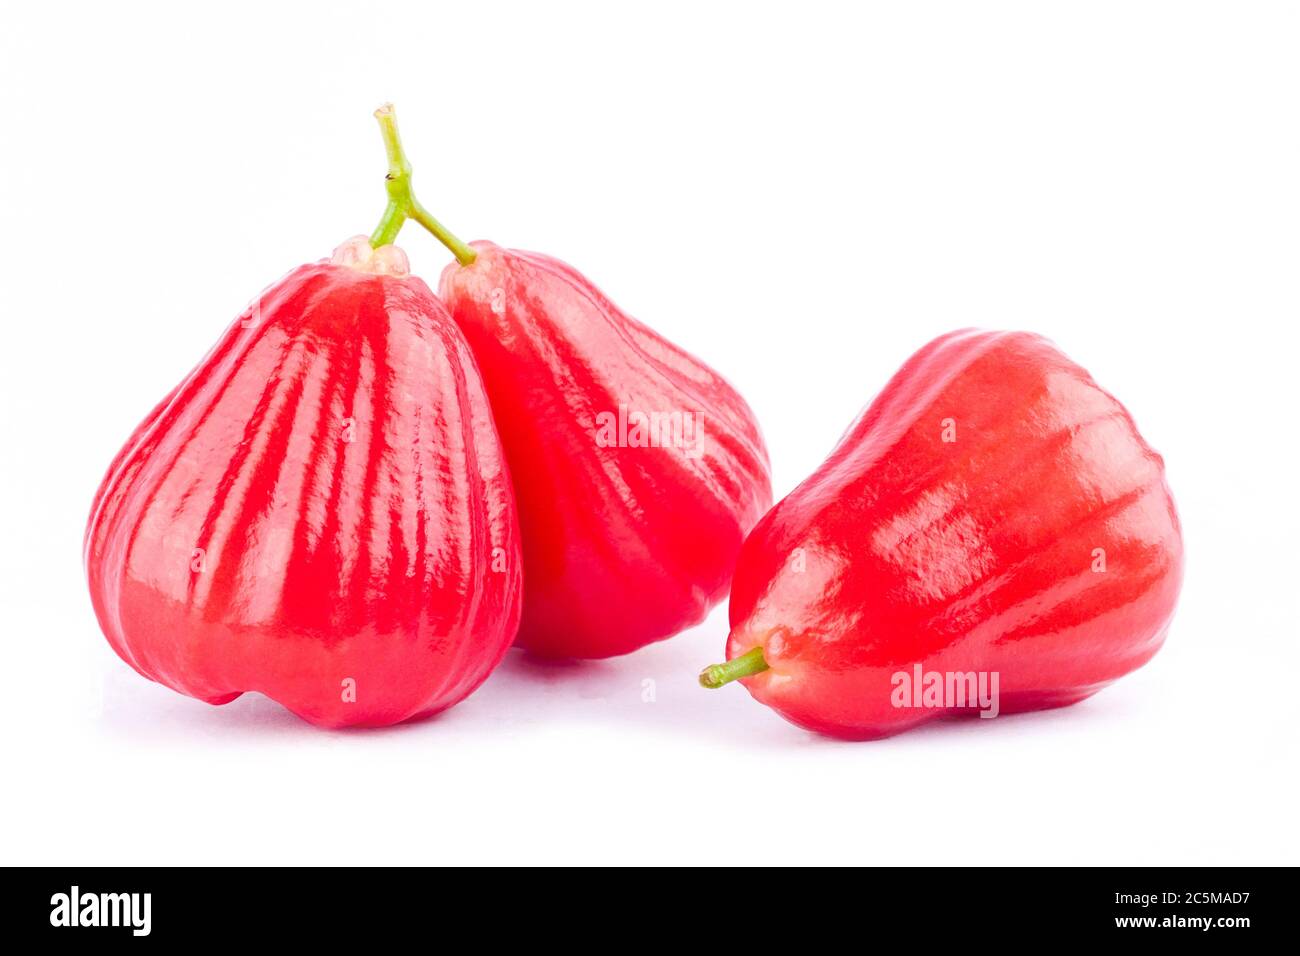 Rose Apfel oder Chomphu auf weißem Hintergrund gesunde Rose Apfel Obst Nahrung isoliert Stockfoto